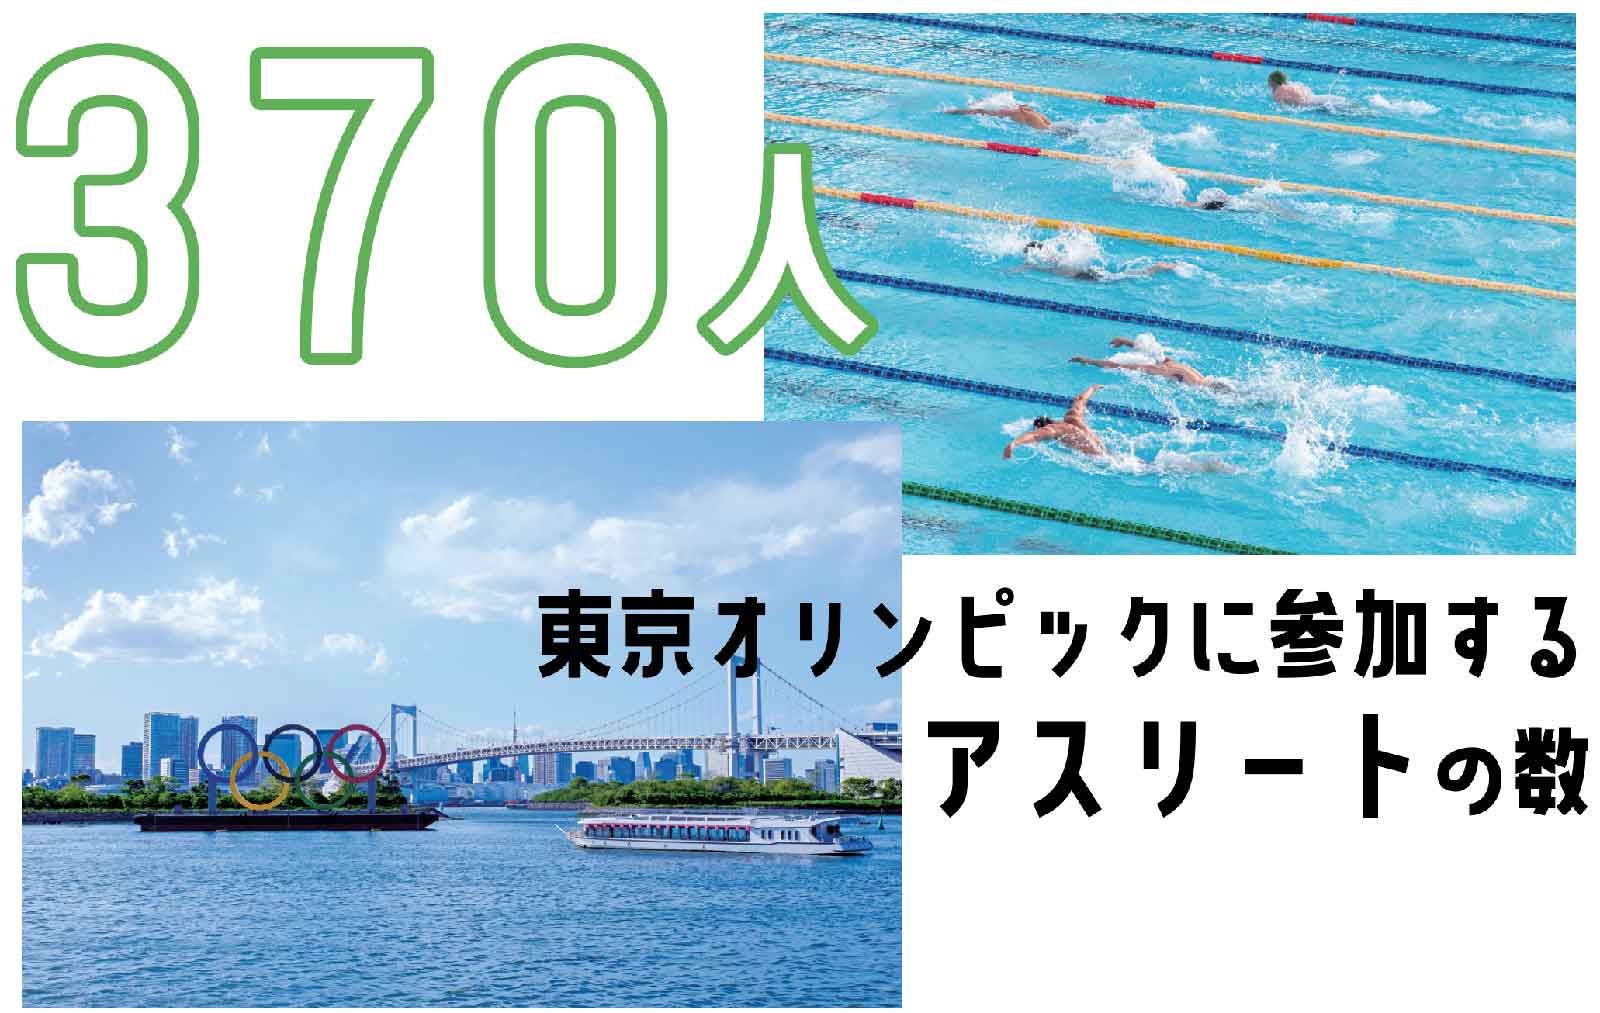 370人-東京オリンピックに参加するアスリートの数